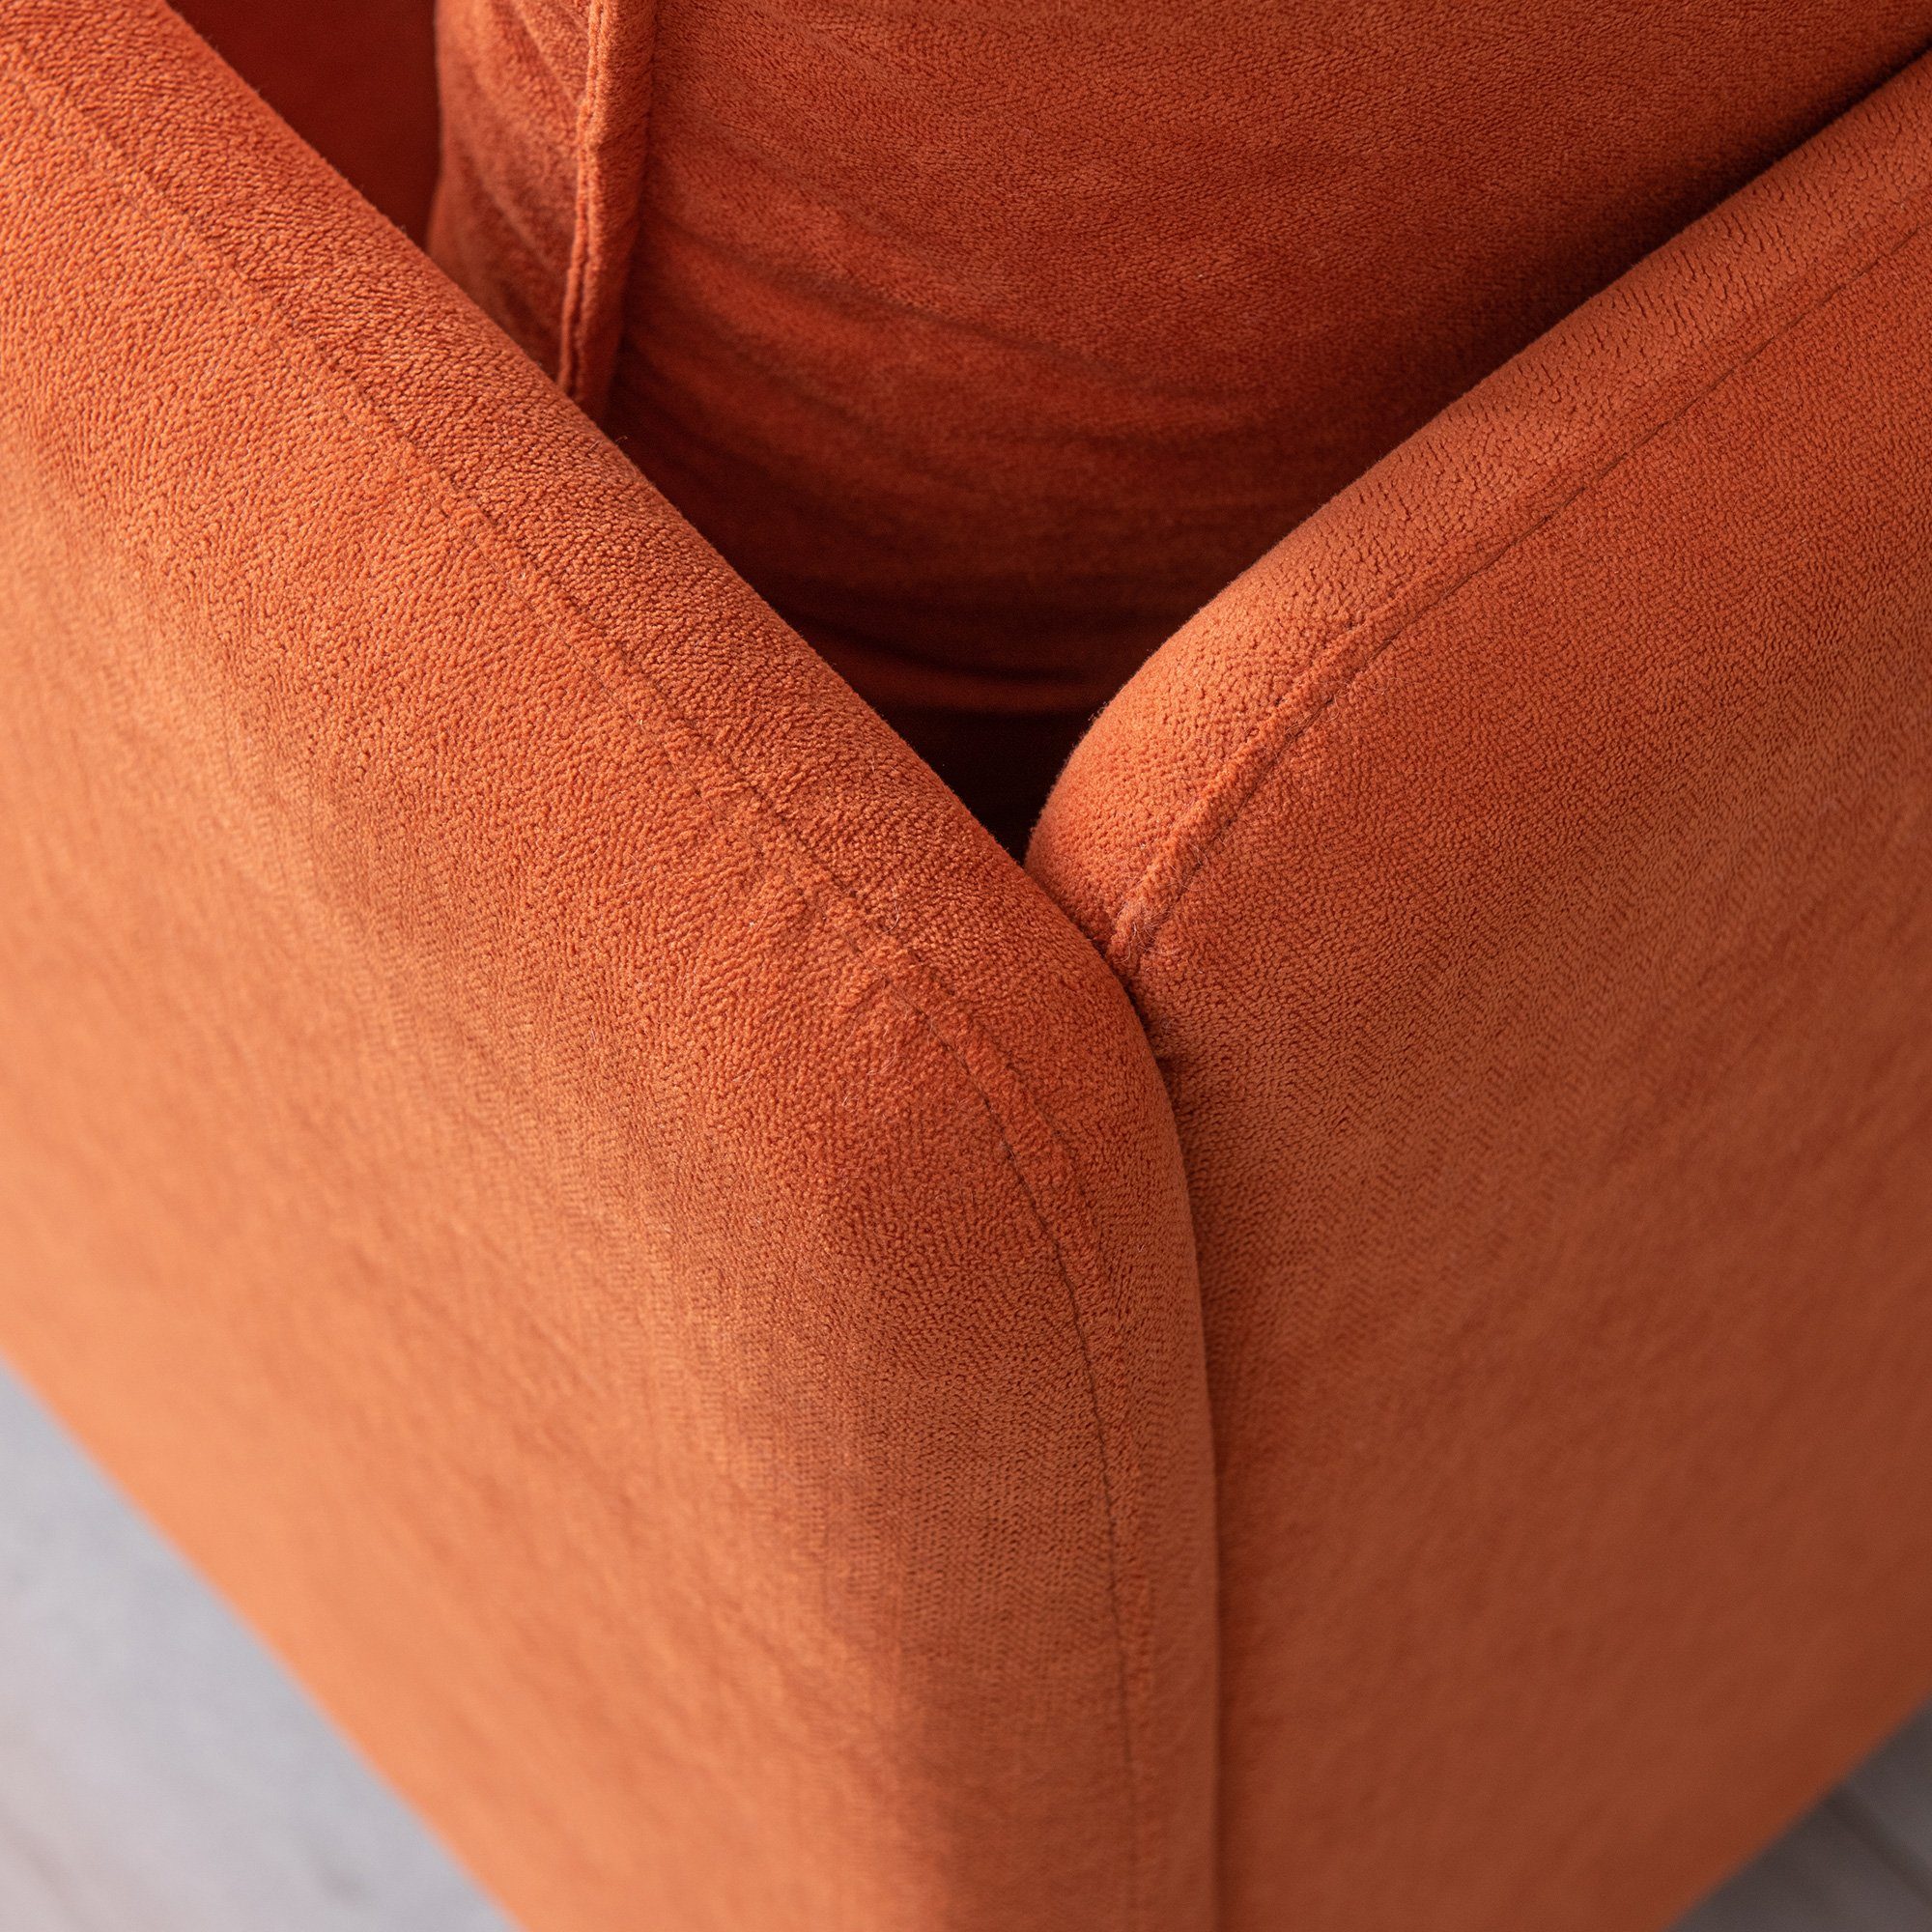 Orange Sofa Einzelsofa Modern Farbe Sessel, Odikalo Baumwollleinen, mehrere gepolsterter